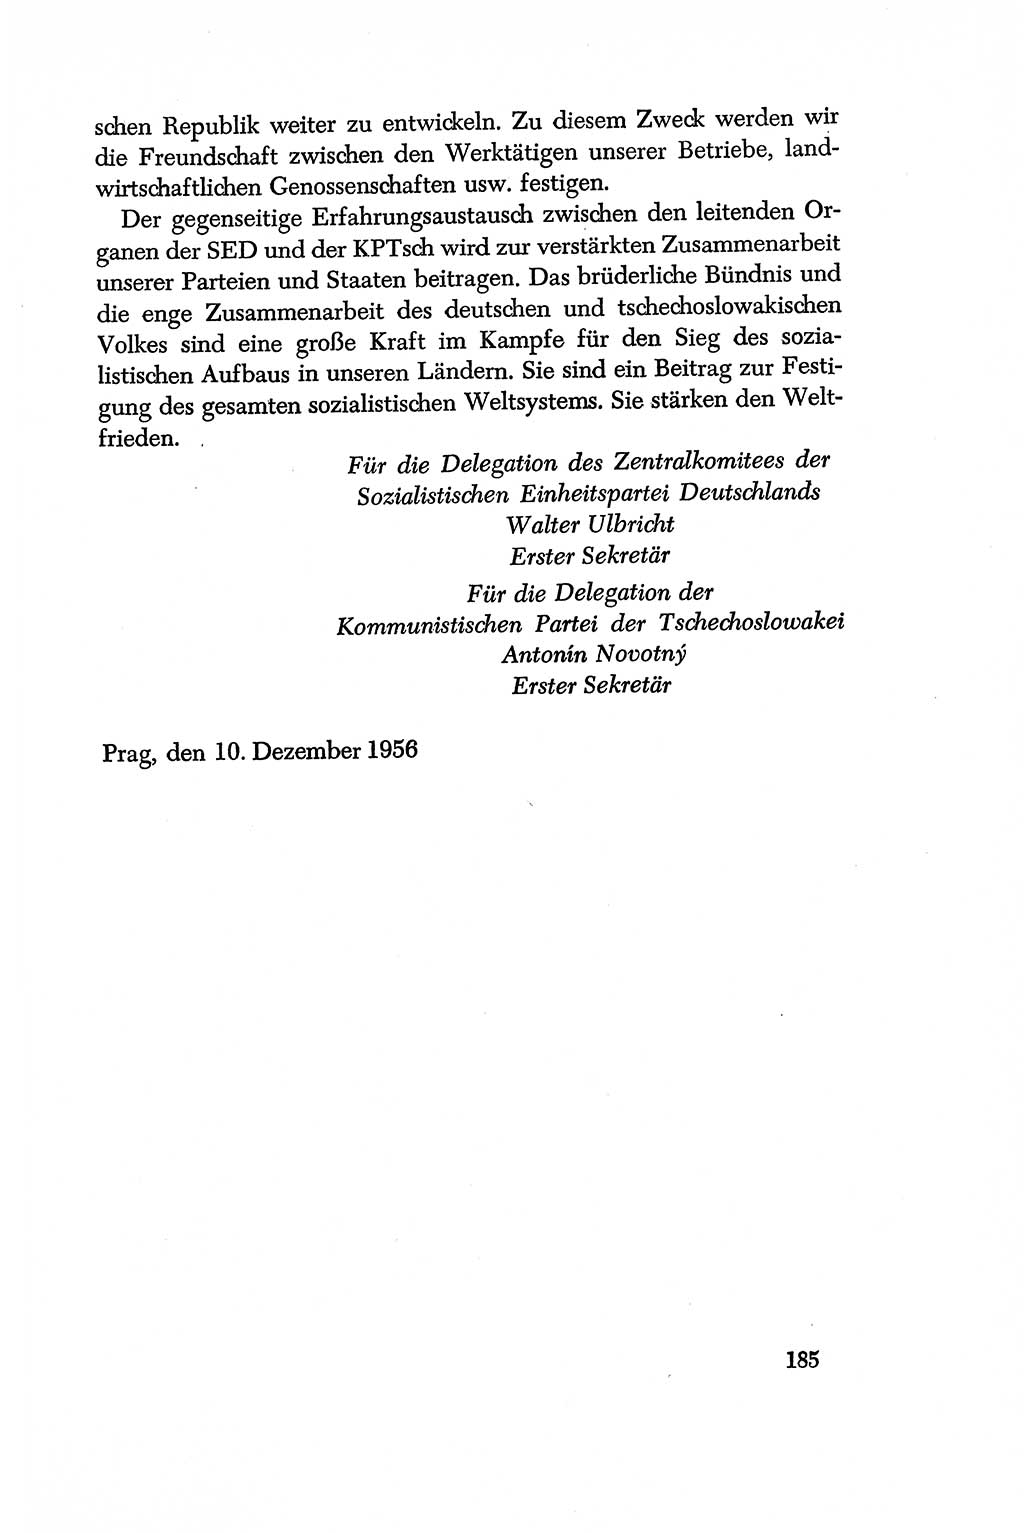 Dokumente der Sozialistischen Einheitspartei Deutschlands (SED) [Deutsche Demokratische Republik (DDR)] 1956-1957, Seite 185 (Dok. SED DDR 1956-1957, S. 185)